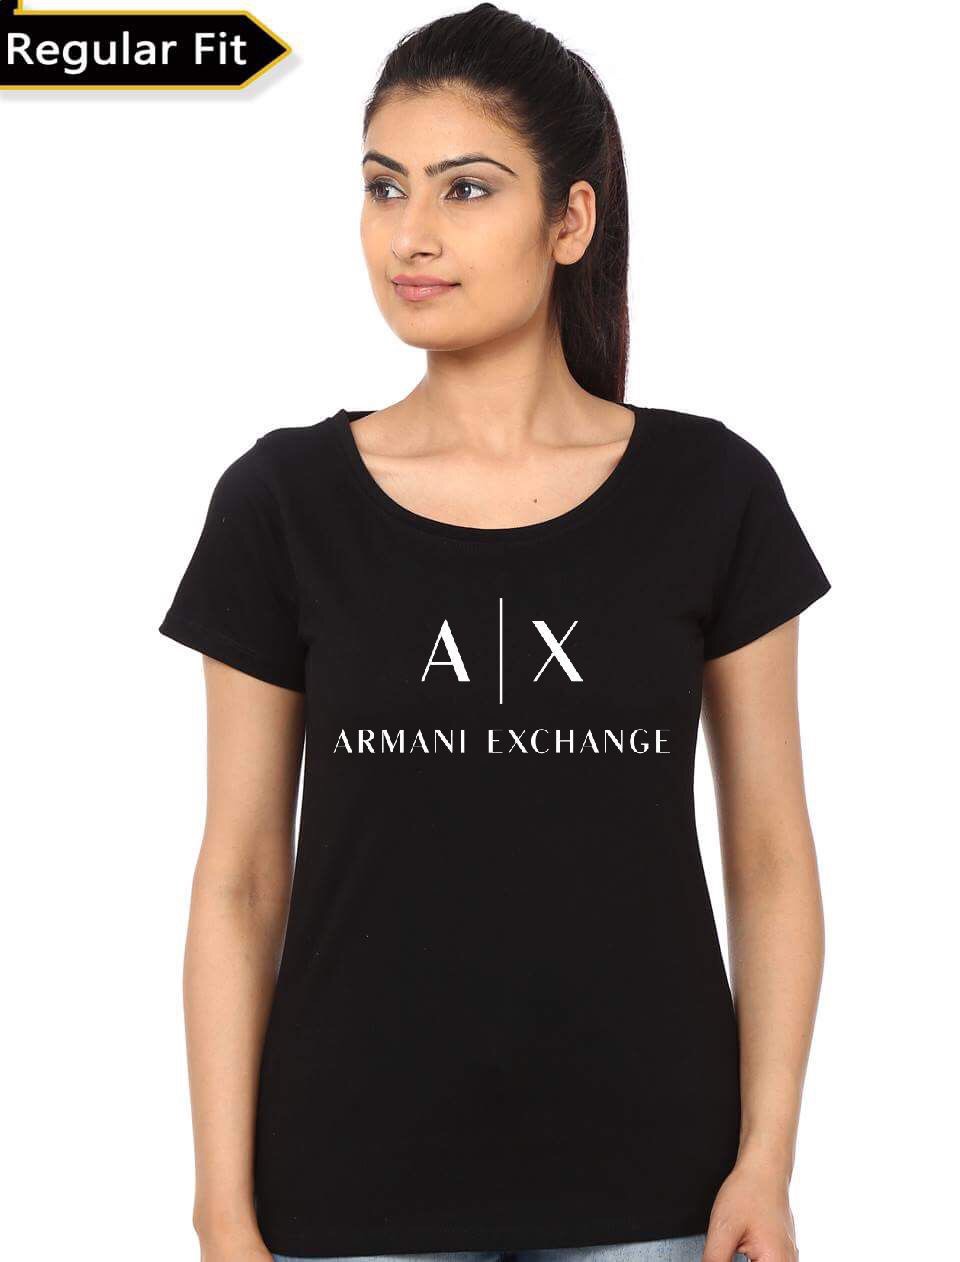 armani exchange girl shirts